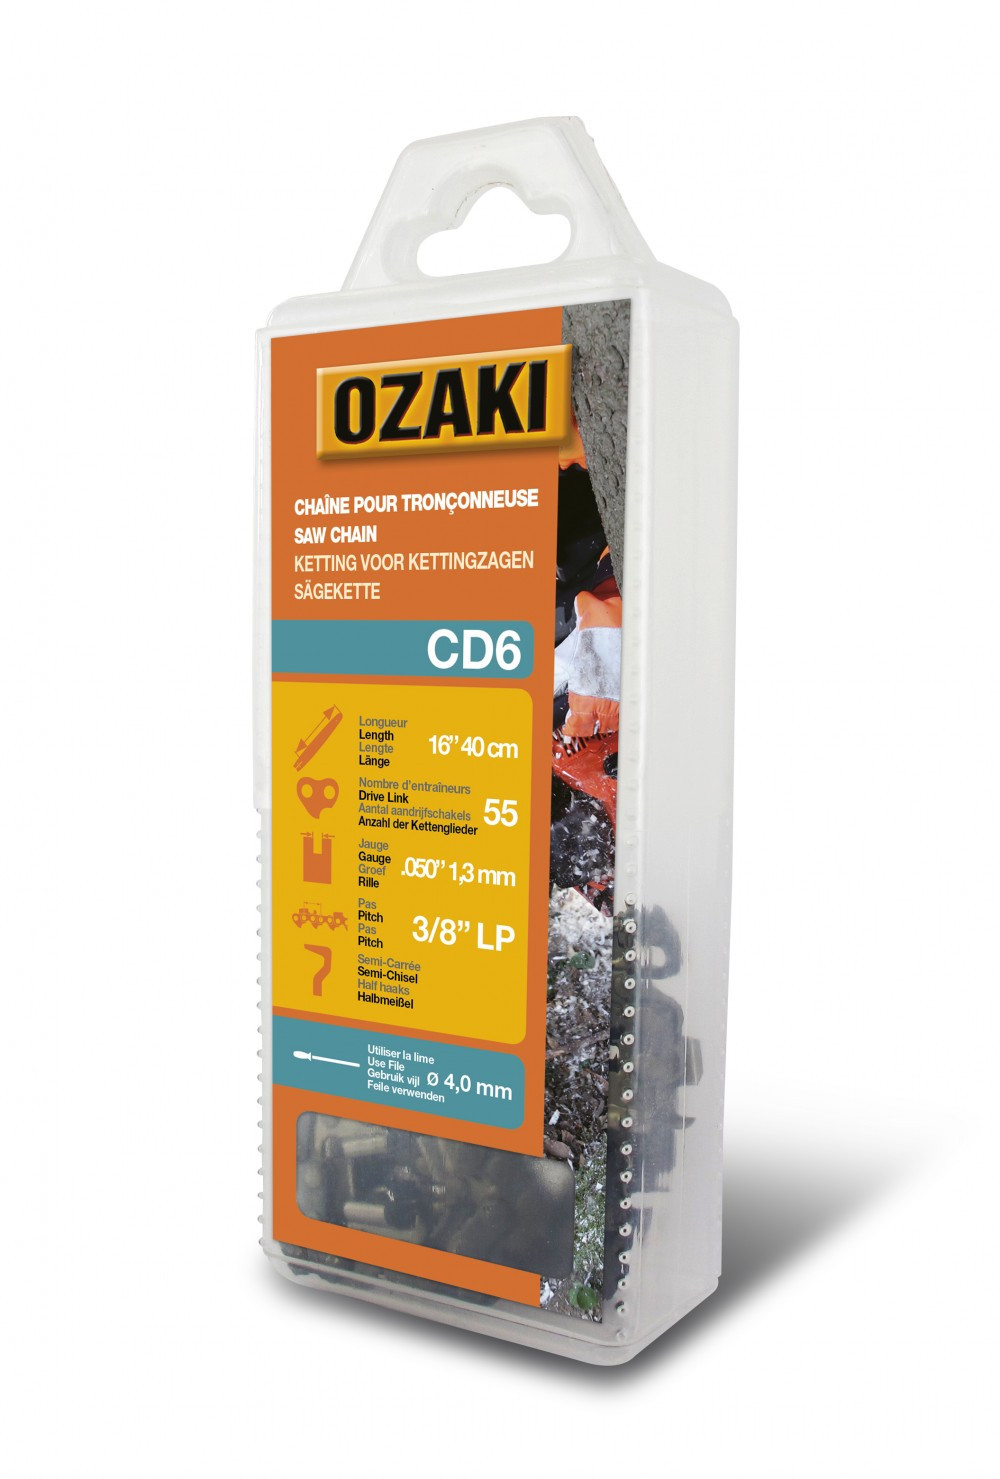 Chaîne de tronçonneuse OZAKI semi carrée: .3/8"LP .050 (1,3mm) 55 entraîneurs